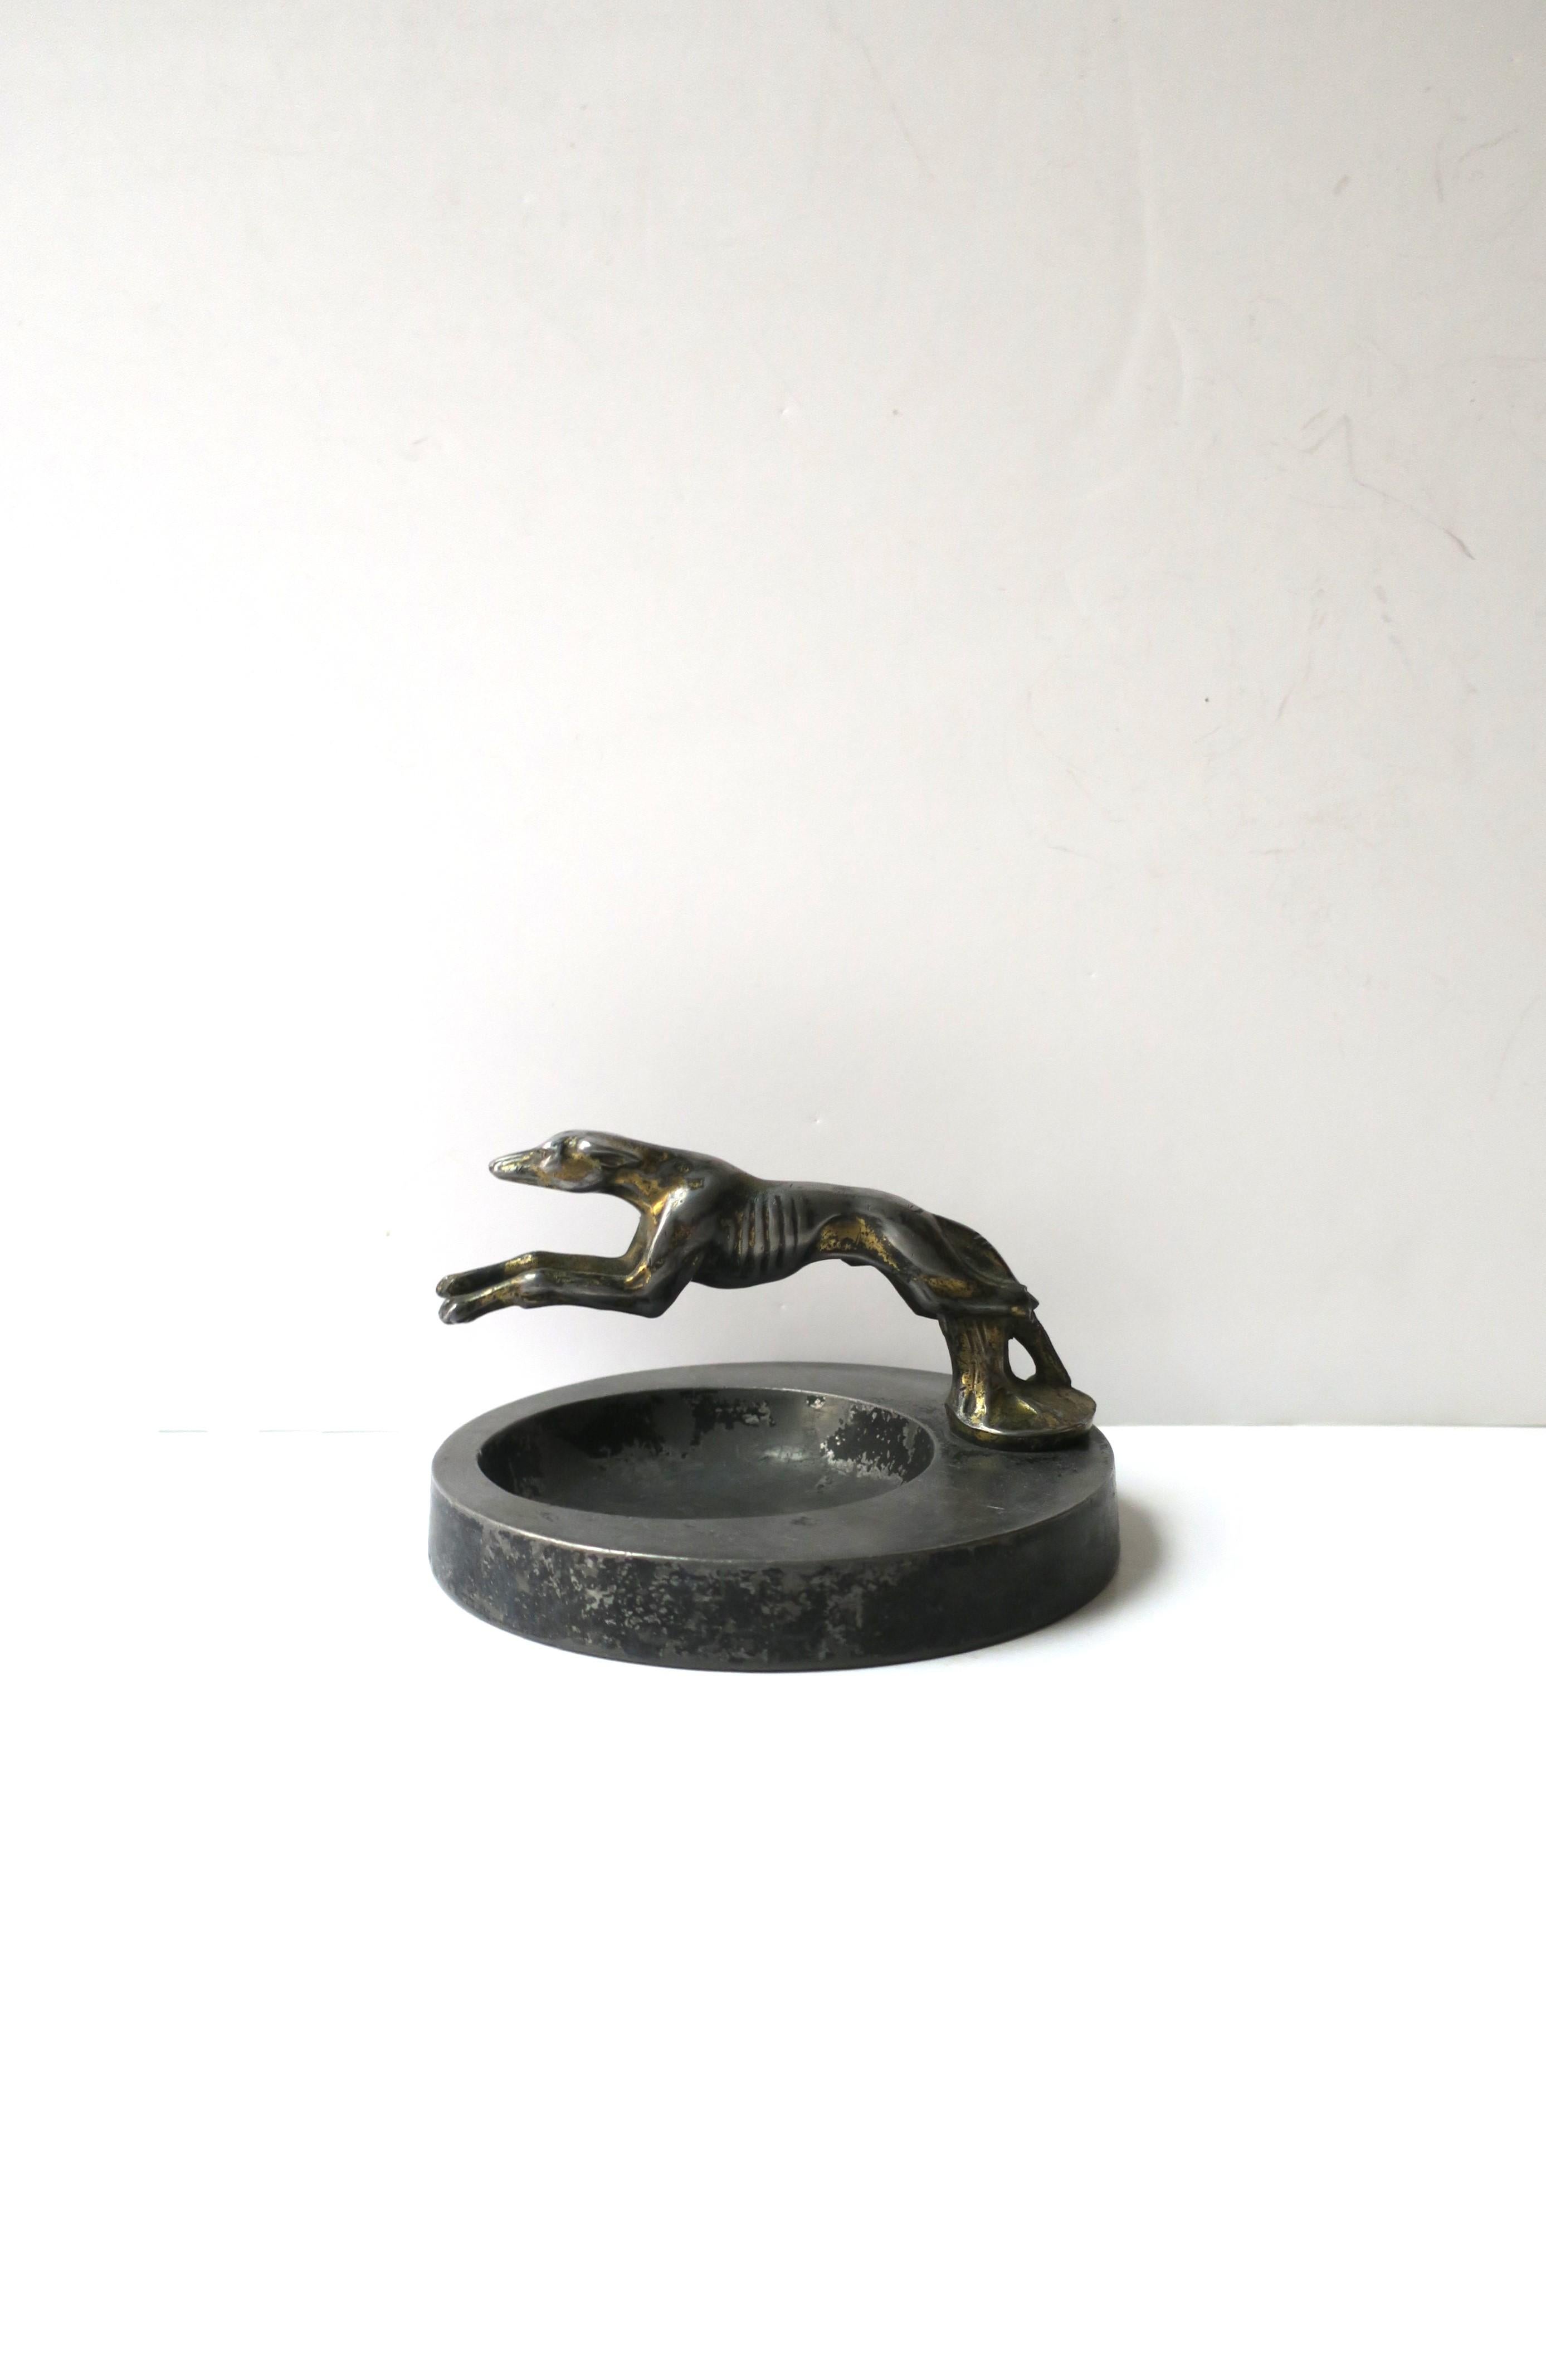 Beachtliche Metallvideotasche mit Skulptur eines gepeitschten Windhundes, Art Deco, ca. Anfang des 20. Jahrhunderts. Der Sockel ist rund mit einer gegossenen Windhundpeitschen-Skulptur über der Auffangfläche. Der Hund bewegt sich um 360 Grad, wie